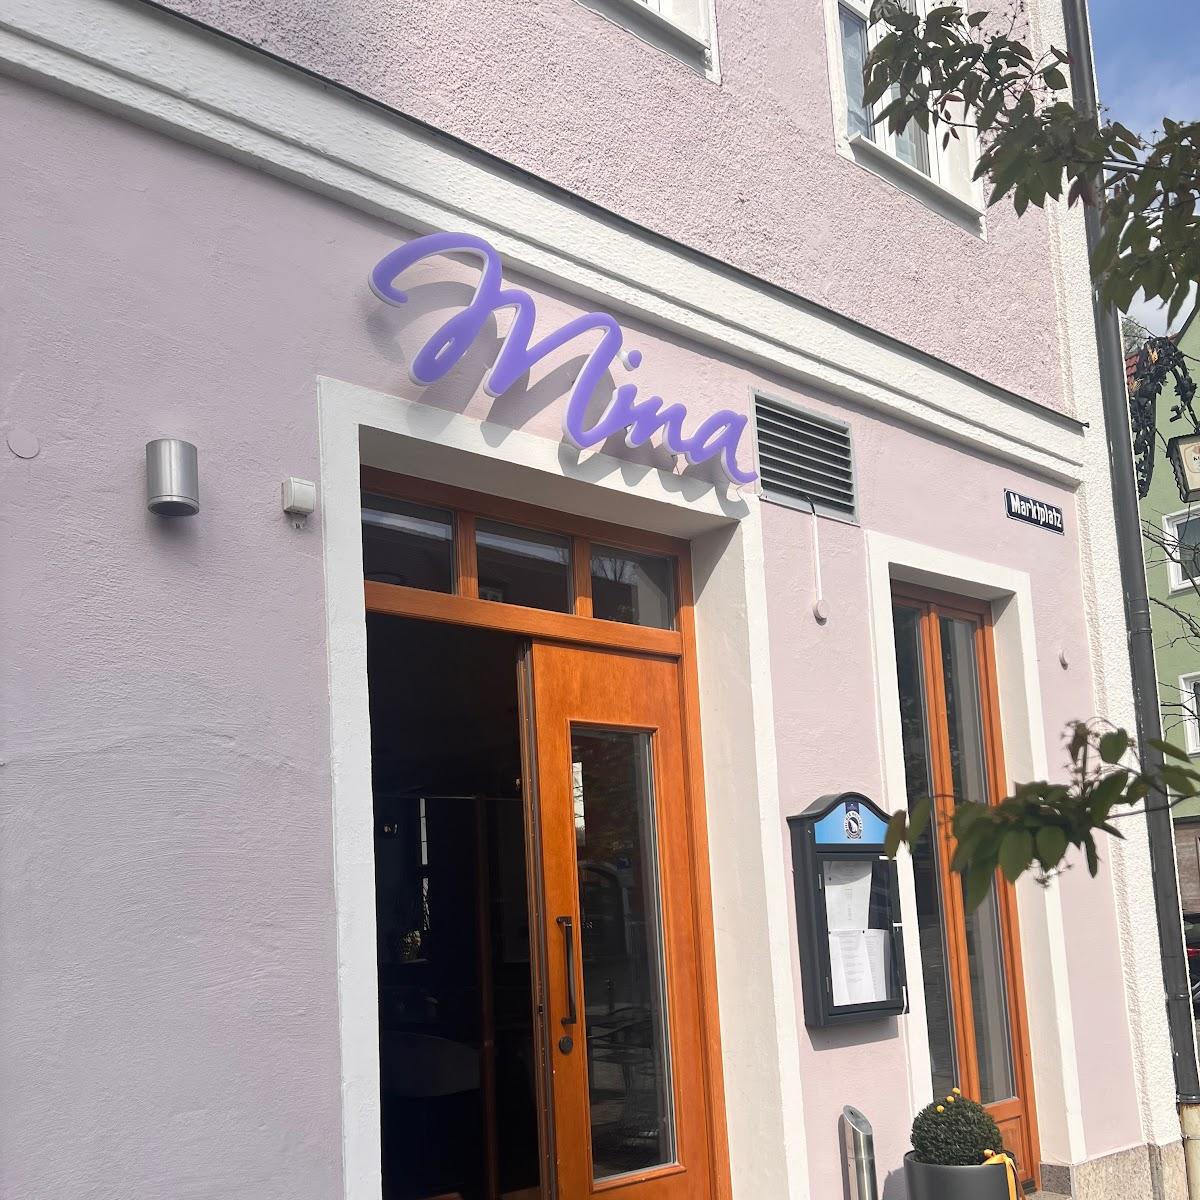 Restaurant "Restaurant Mina" in Mainburg